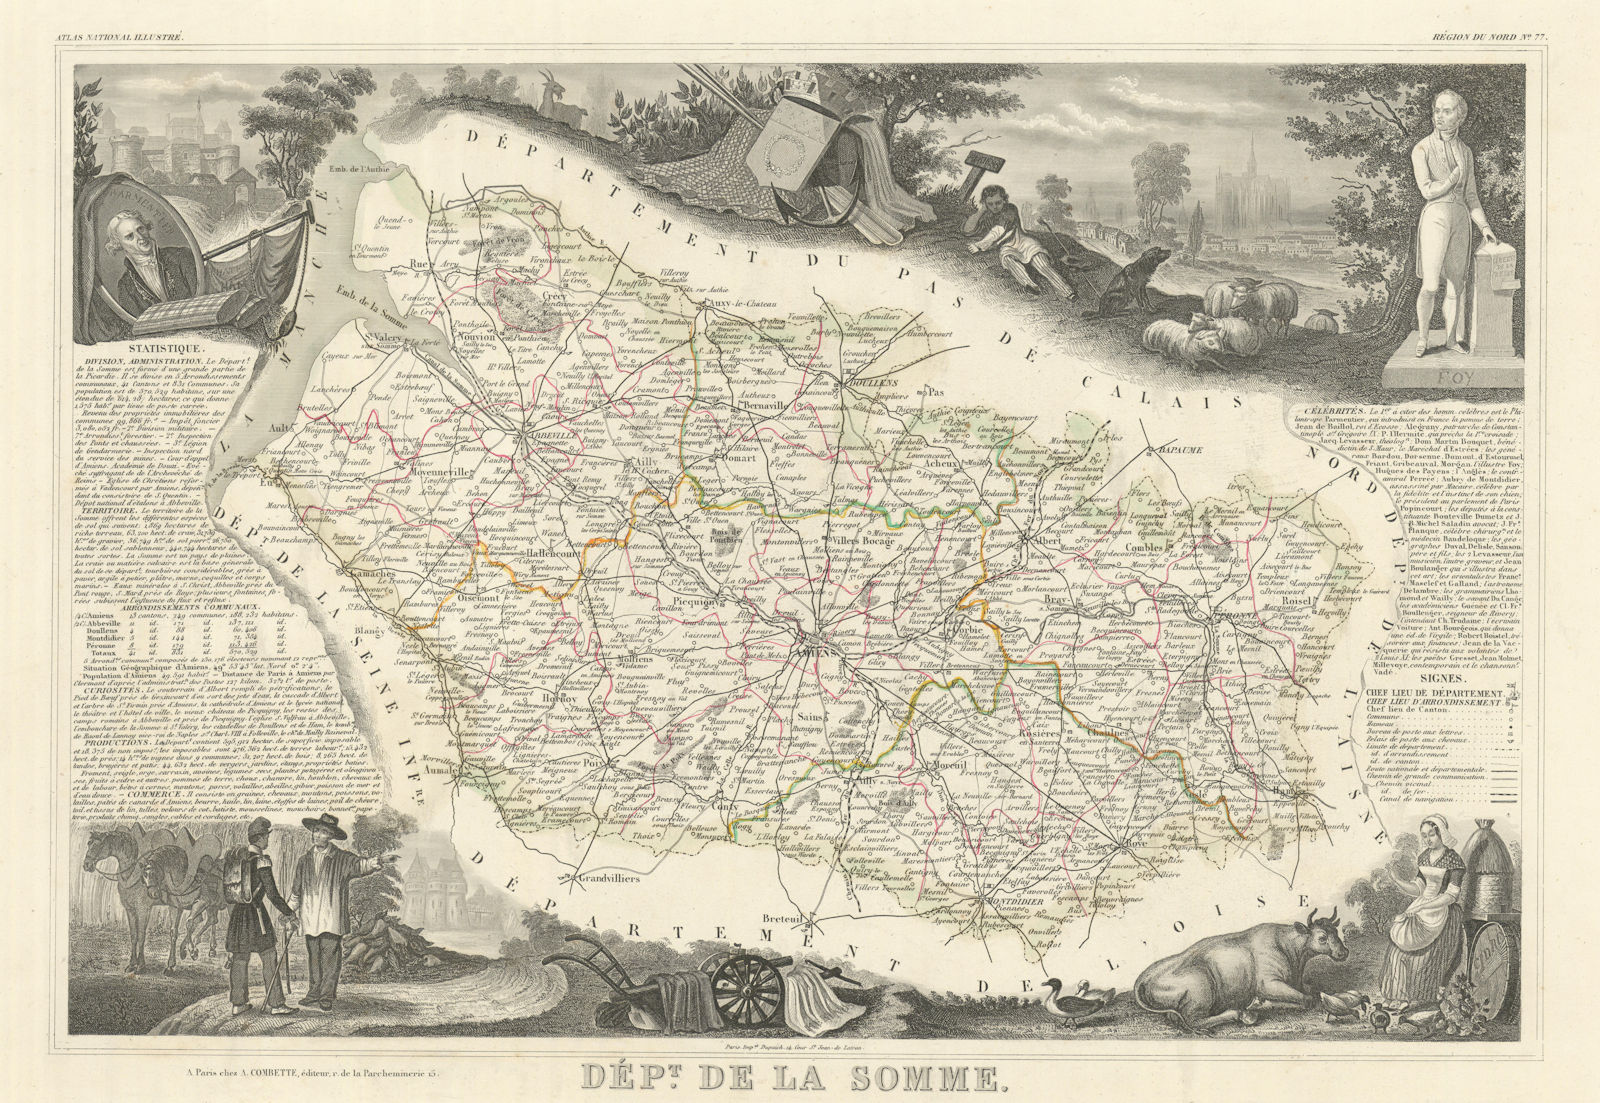 Département de la SOMME. Decorative antique map/carte by Victor LEVASSEUR 1856